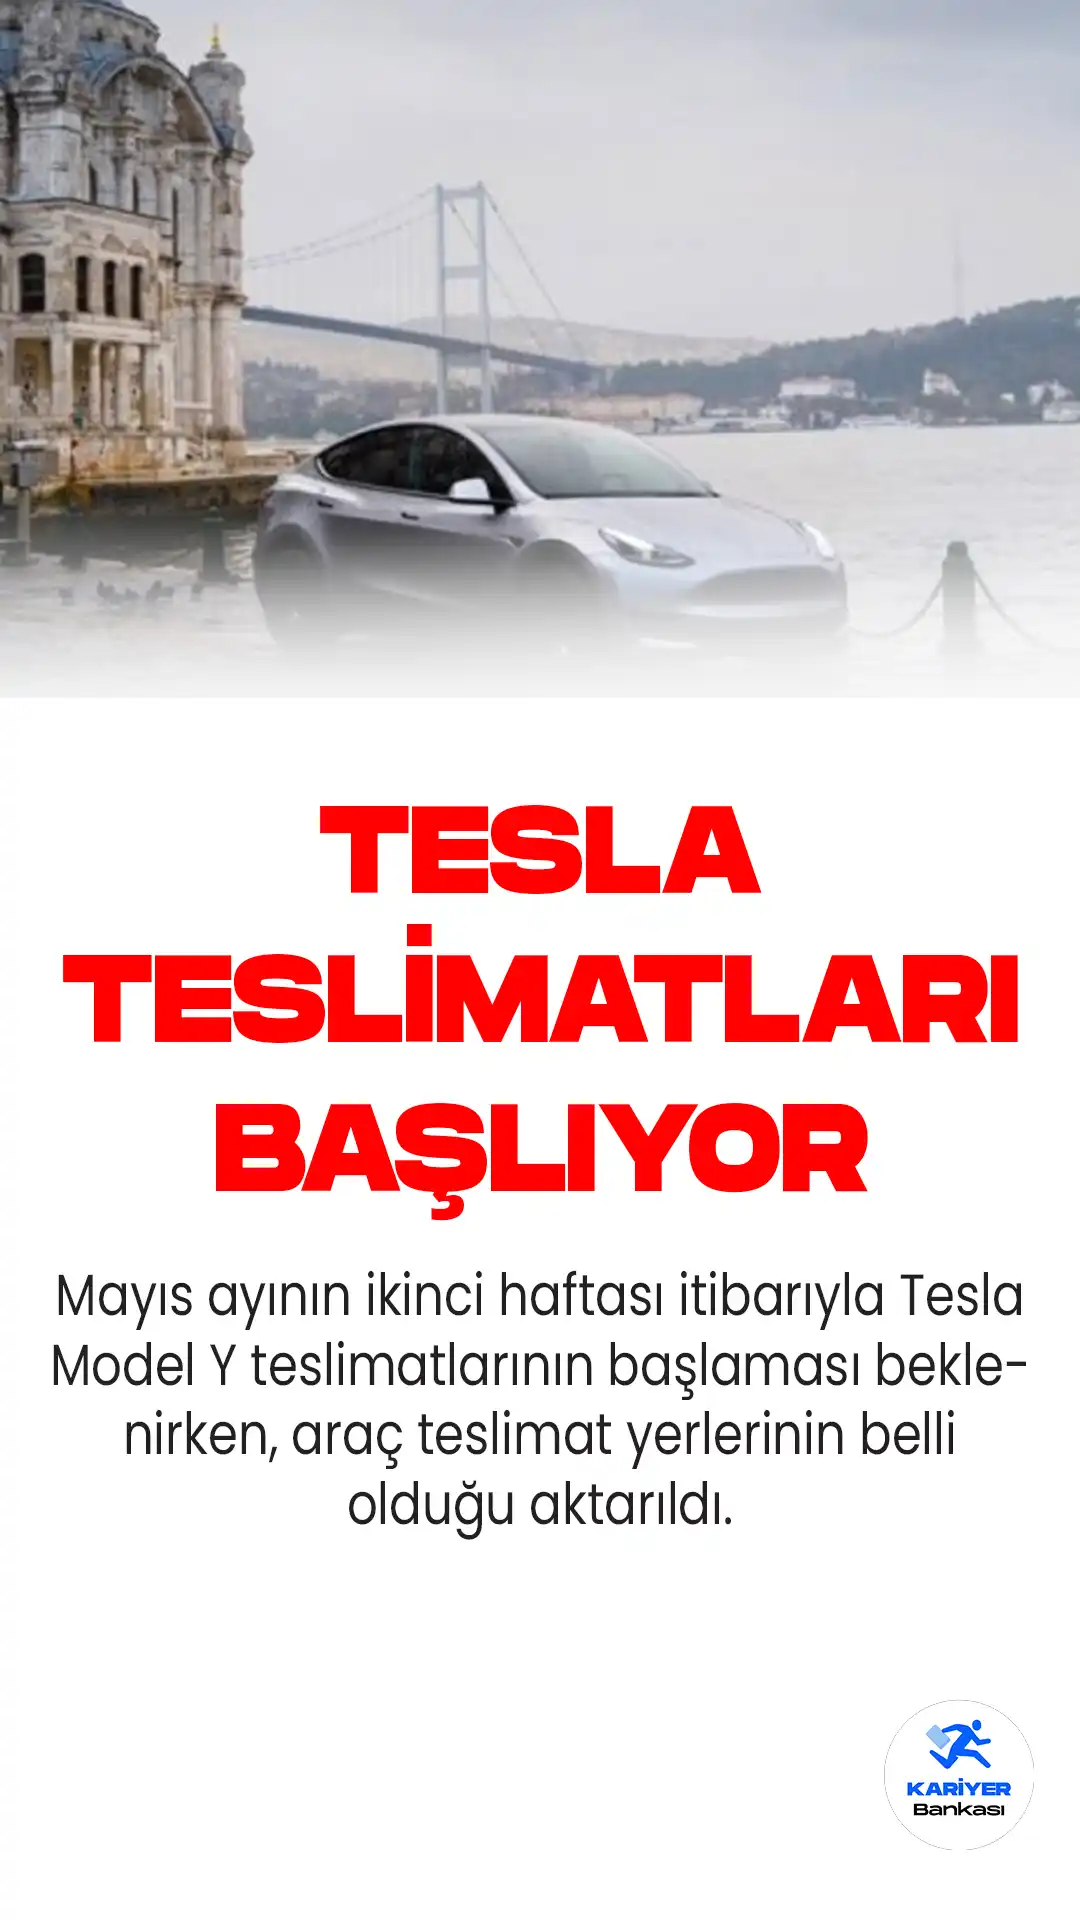 Mayıs ayının ikinci haftası itibarıyla Tesla Model Y teslimatlarının başlaması beklenirken, araç teslimat yerlerinin belli olduğu aktarıldı.